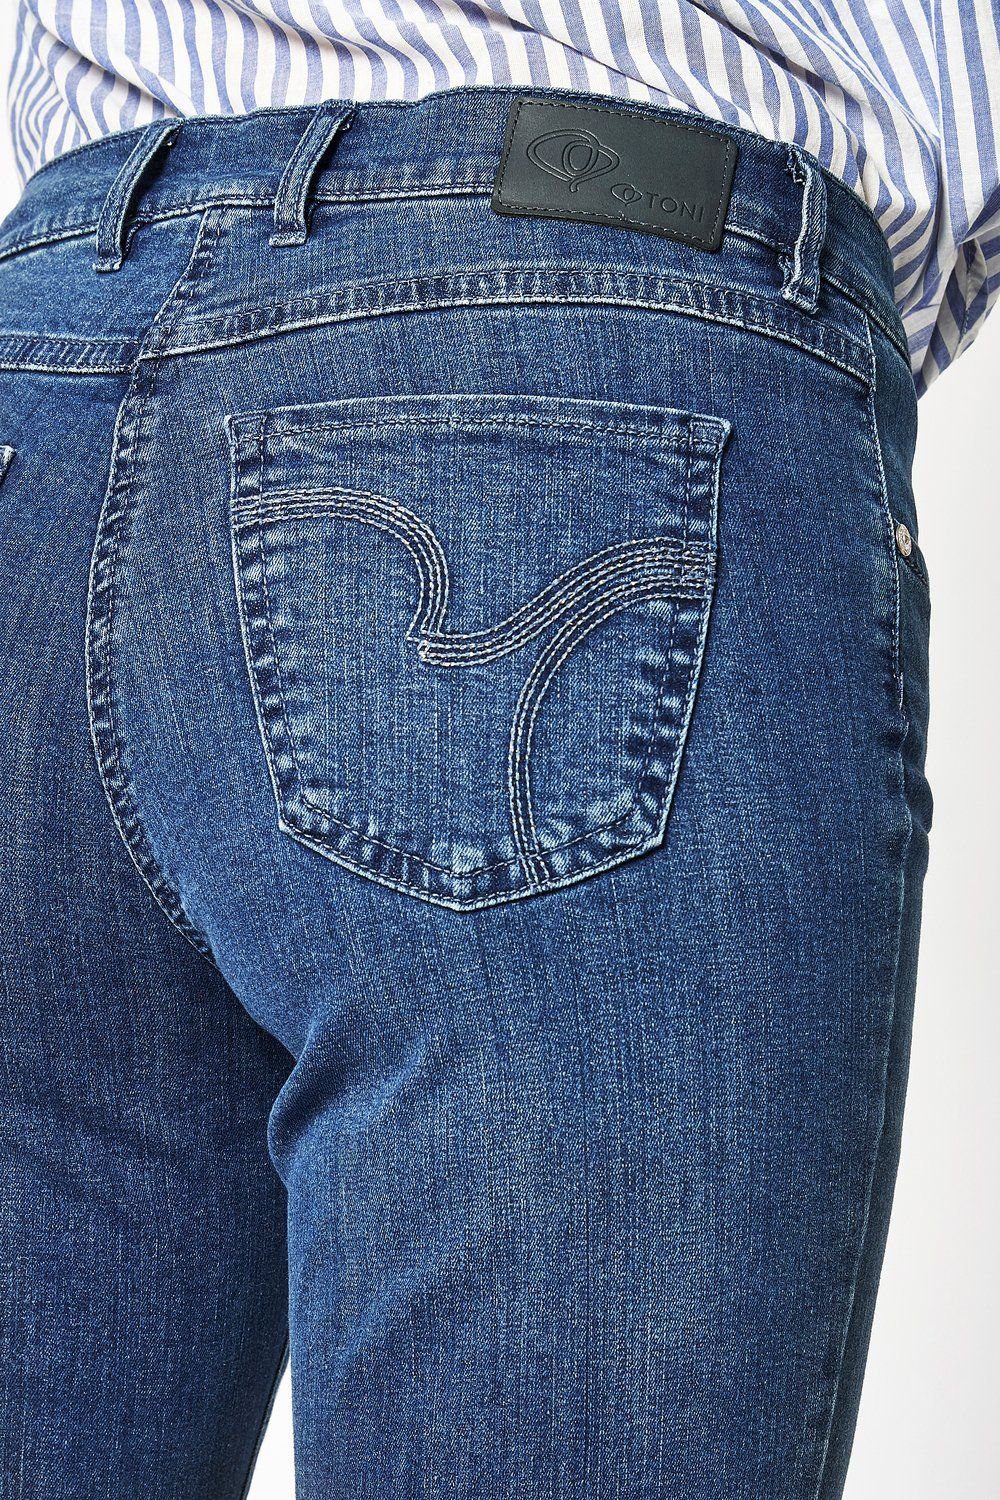 mid 5-Pocket-Jeans blue TONI used